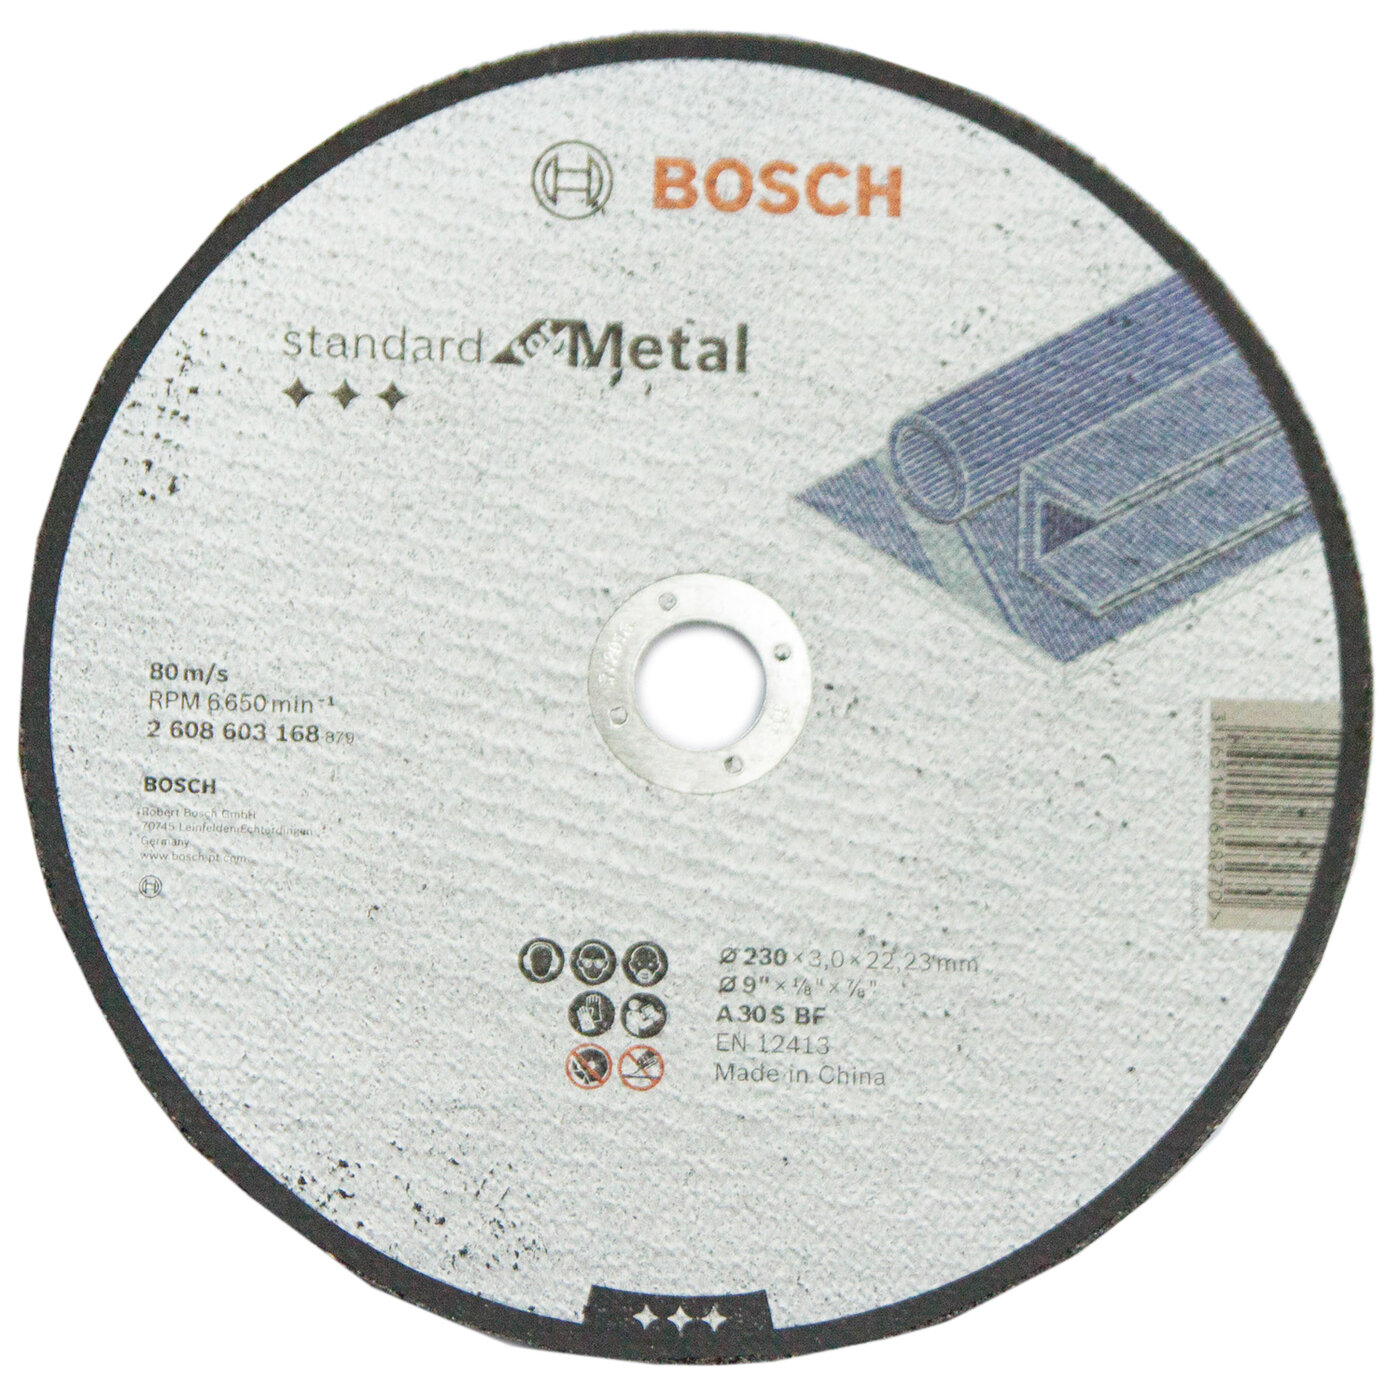 Диск отрезной по металлу Bosch, 230 мм 2608603168